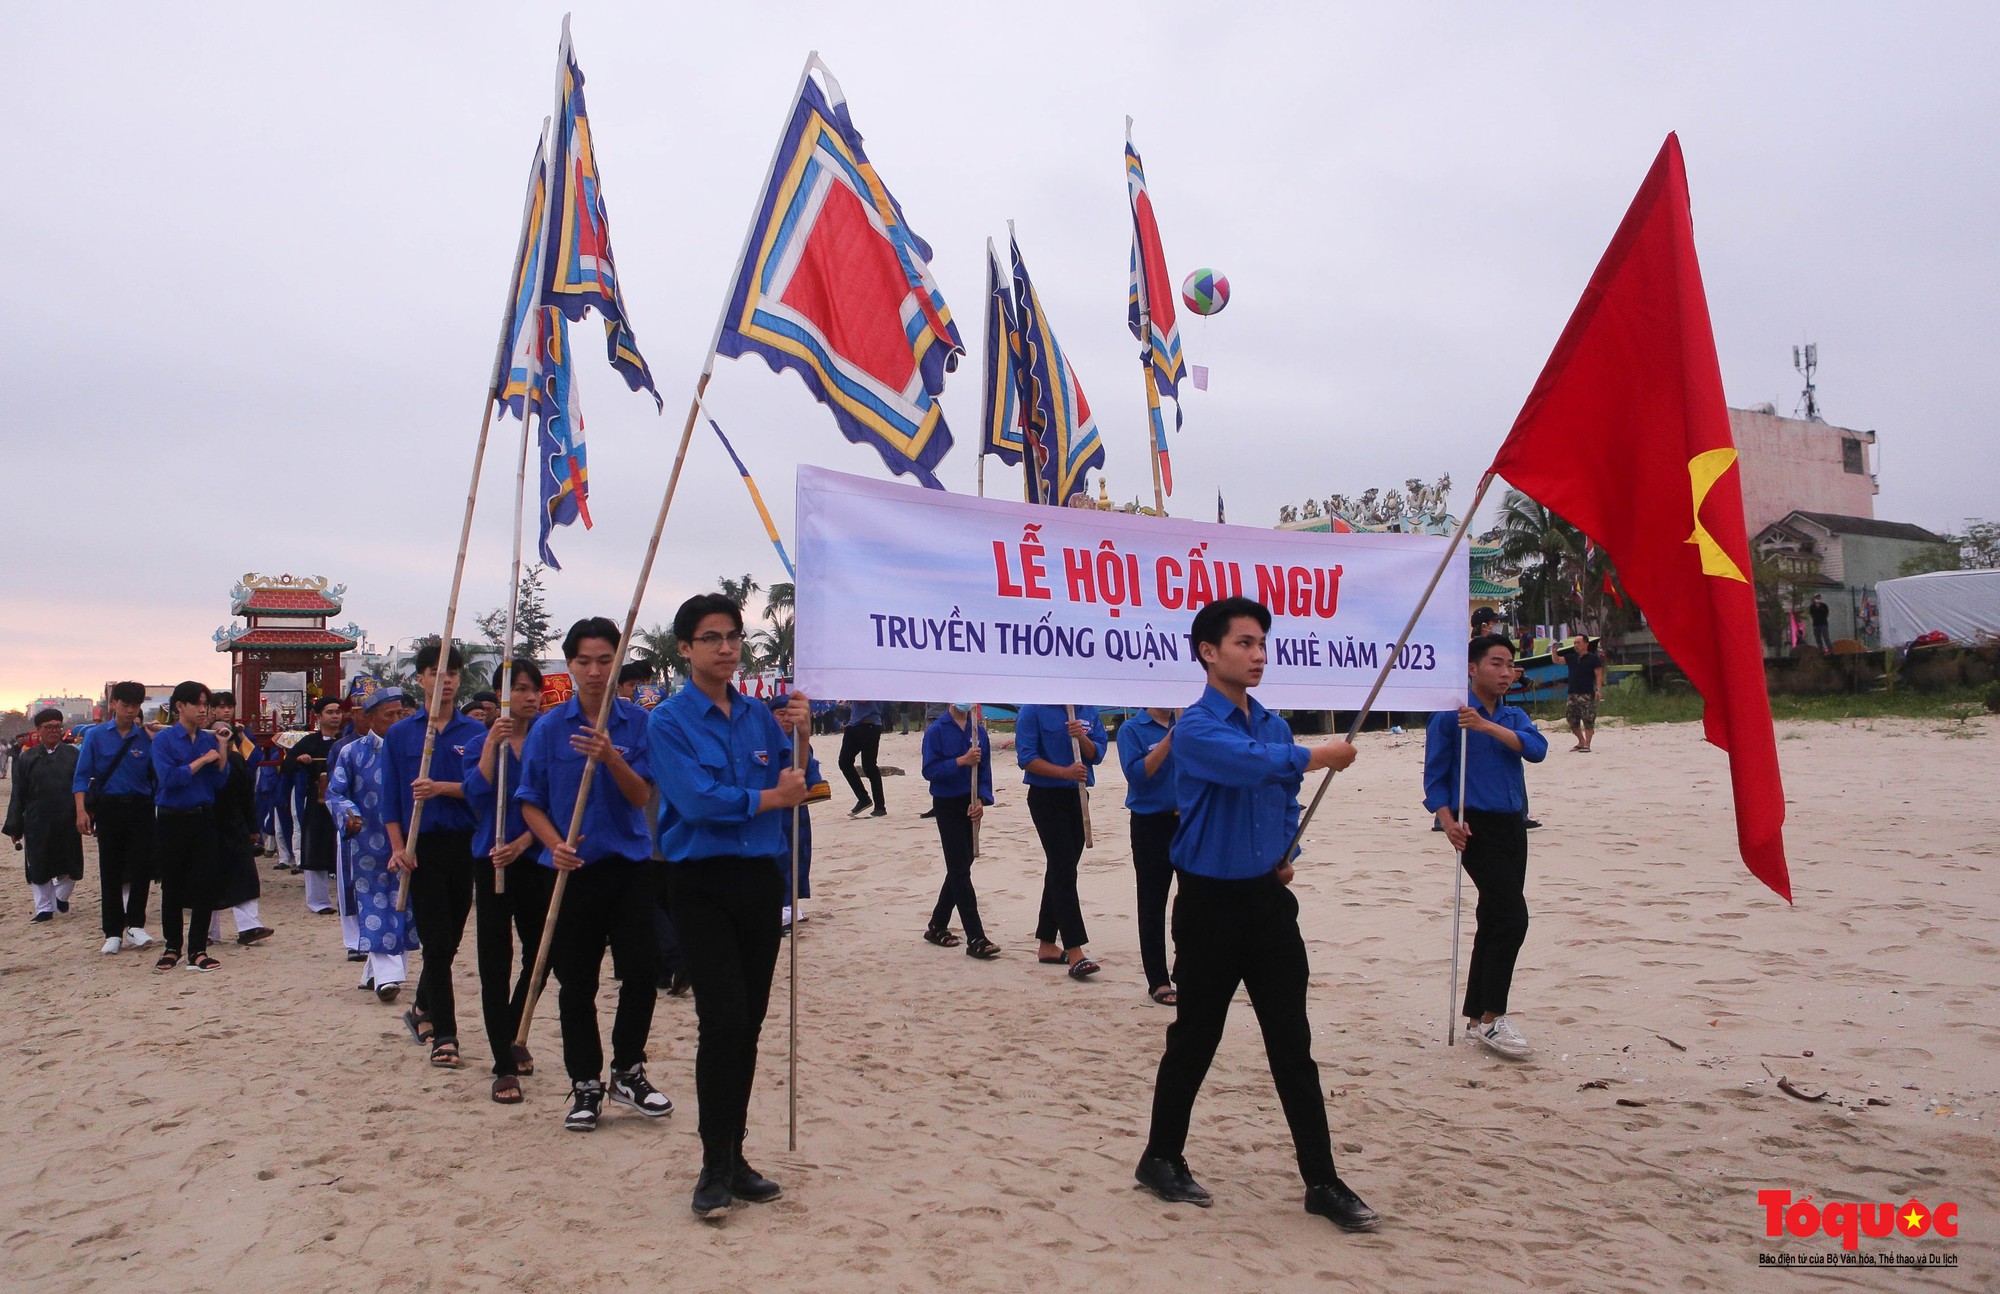 Đặc sắc lễ hội cầu ngư tại Đà Nẵng - Ảnh 4.